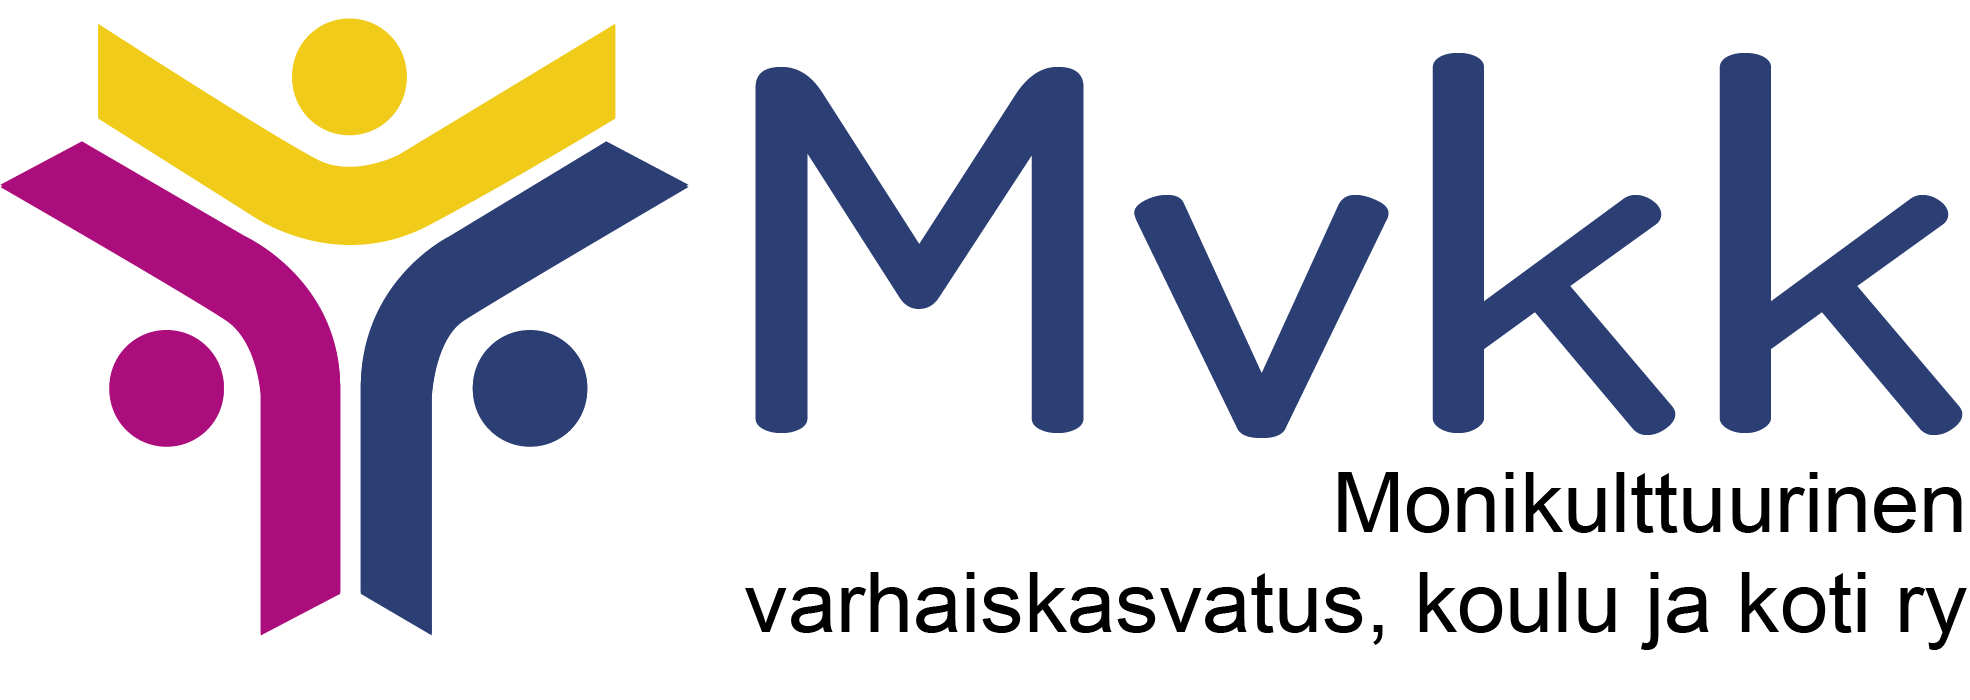 Mvkk:n logo